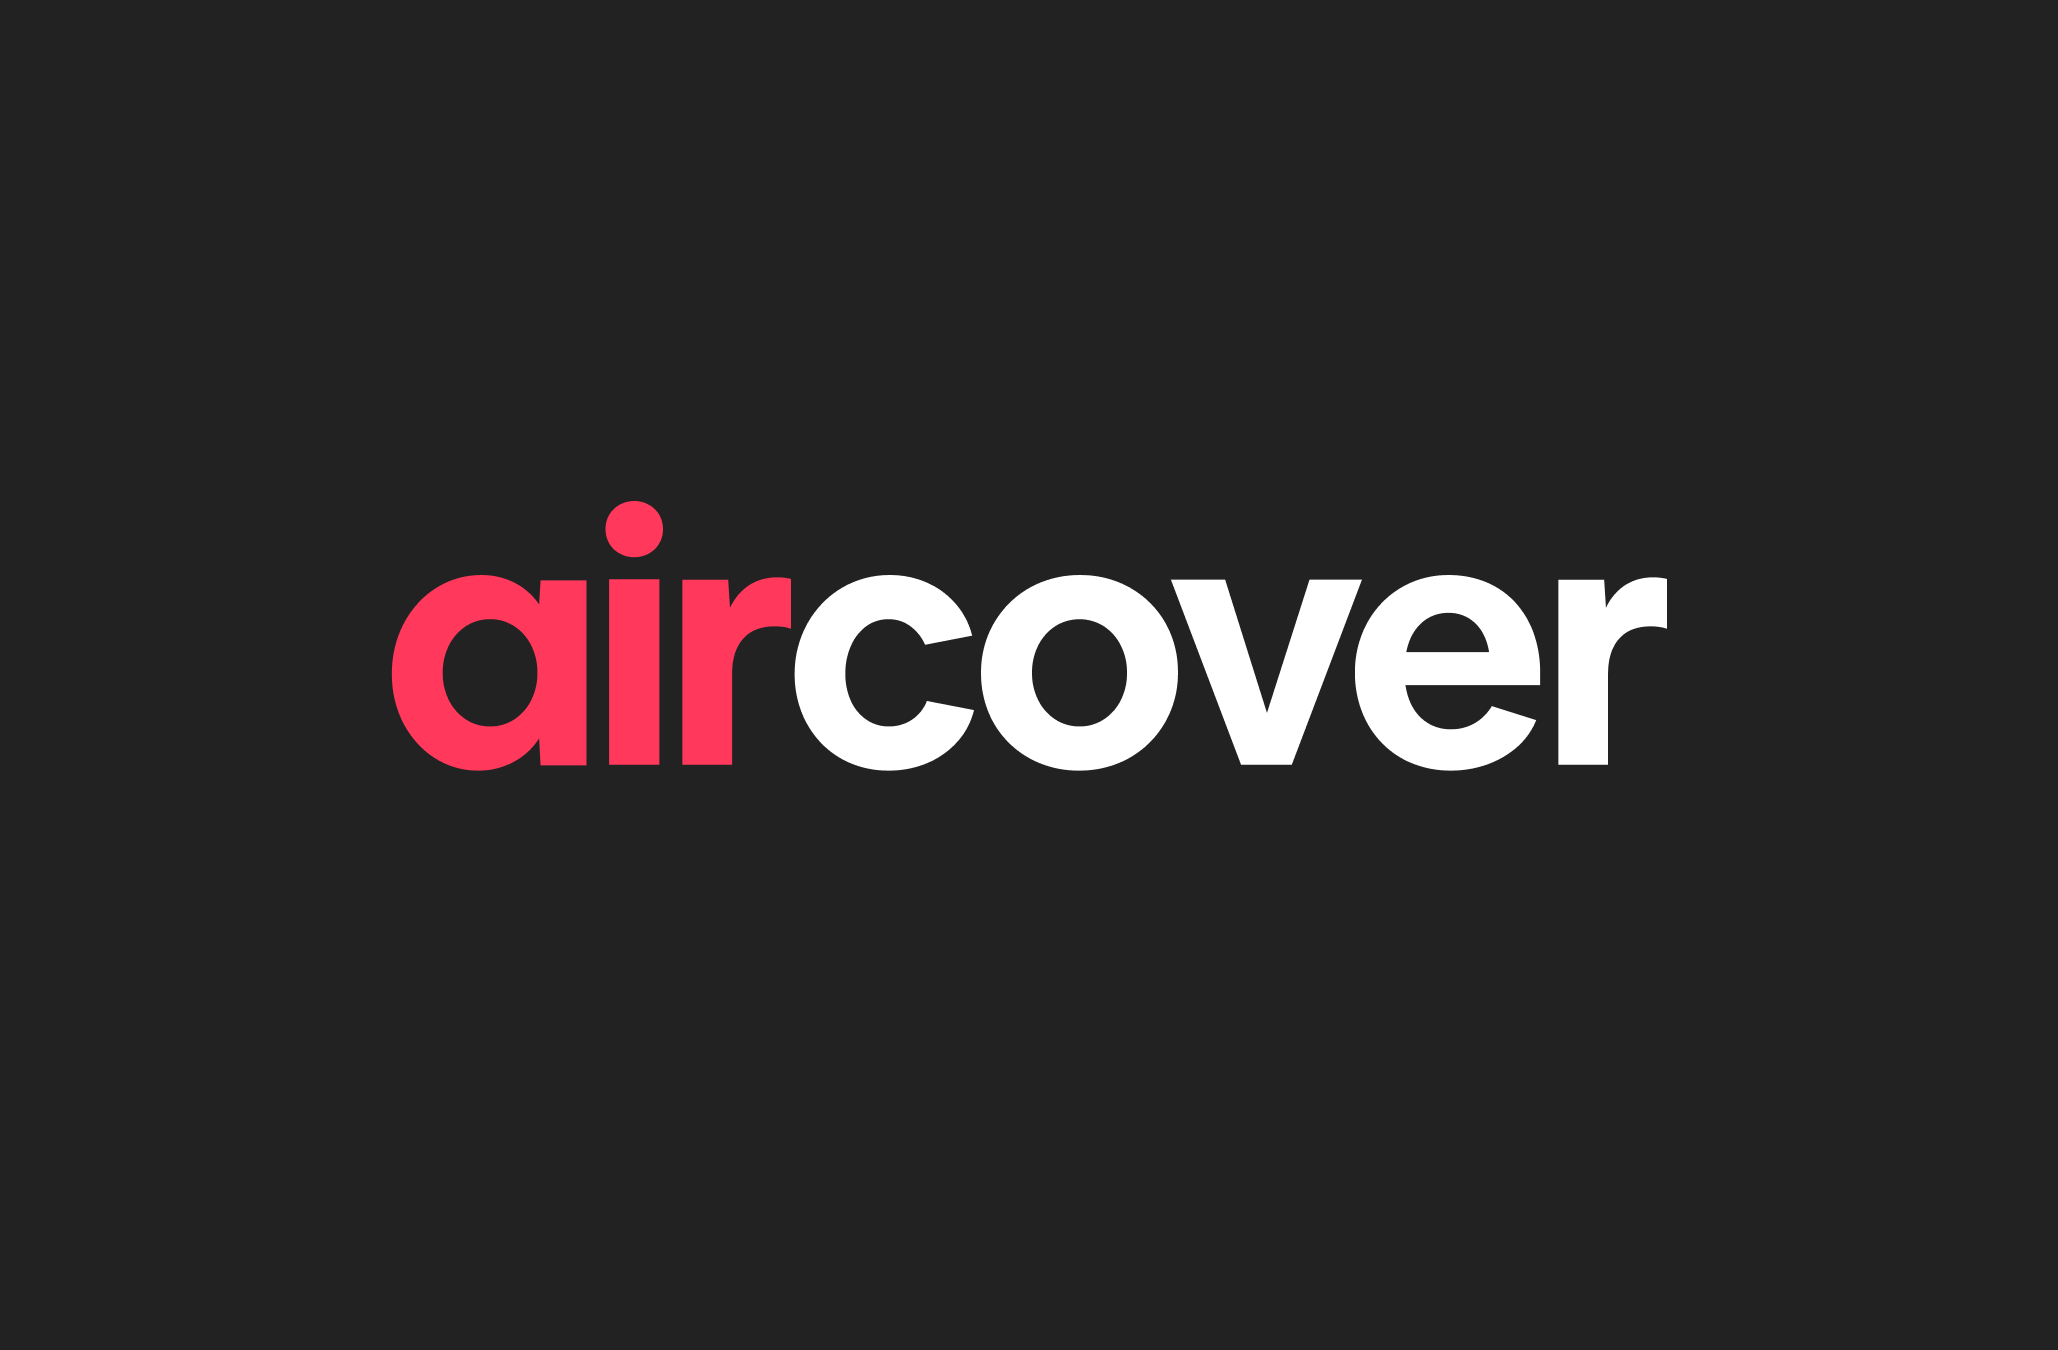 Logo AirCover với các chữ cái màu đỏ và trắng trên nền màu đen.